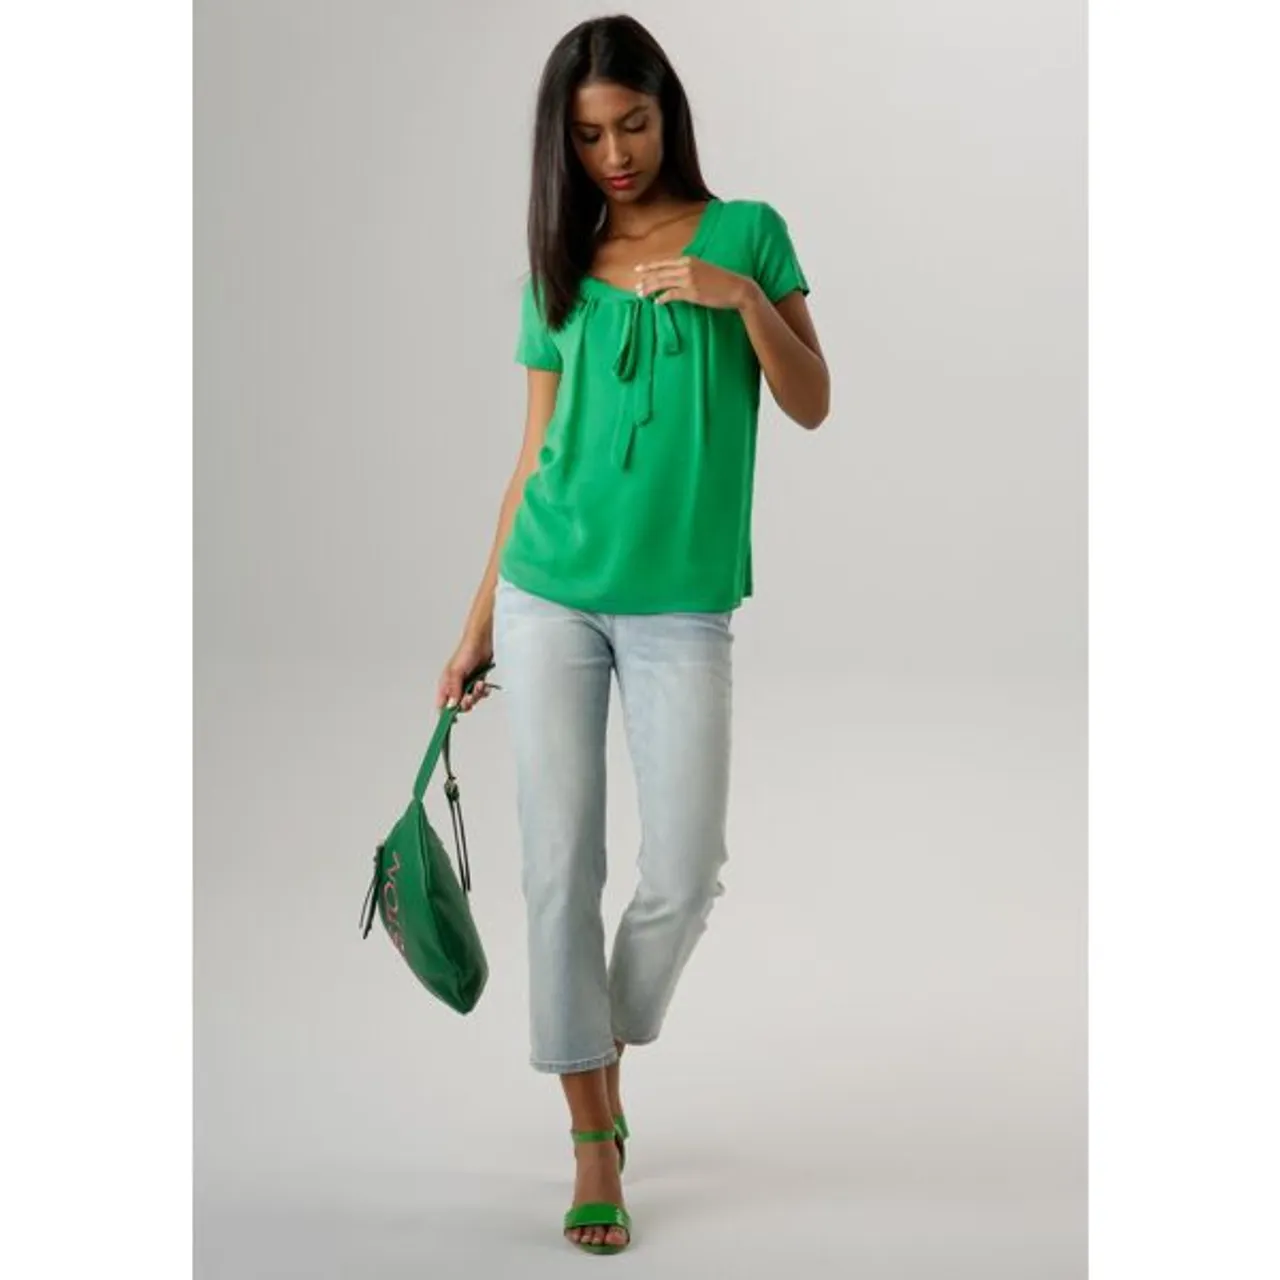 Shirtbluse ANISTON SELECTED Gr. 34, grün Damen Blusen kurzarm mit gedoppeltem Vorderteil